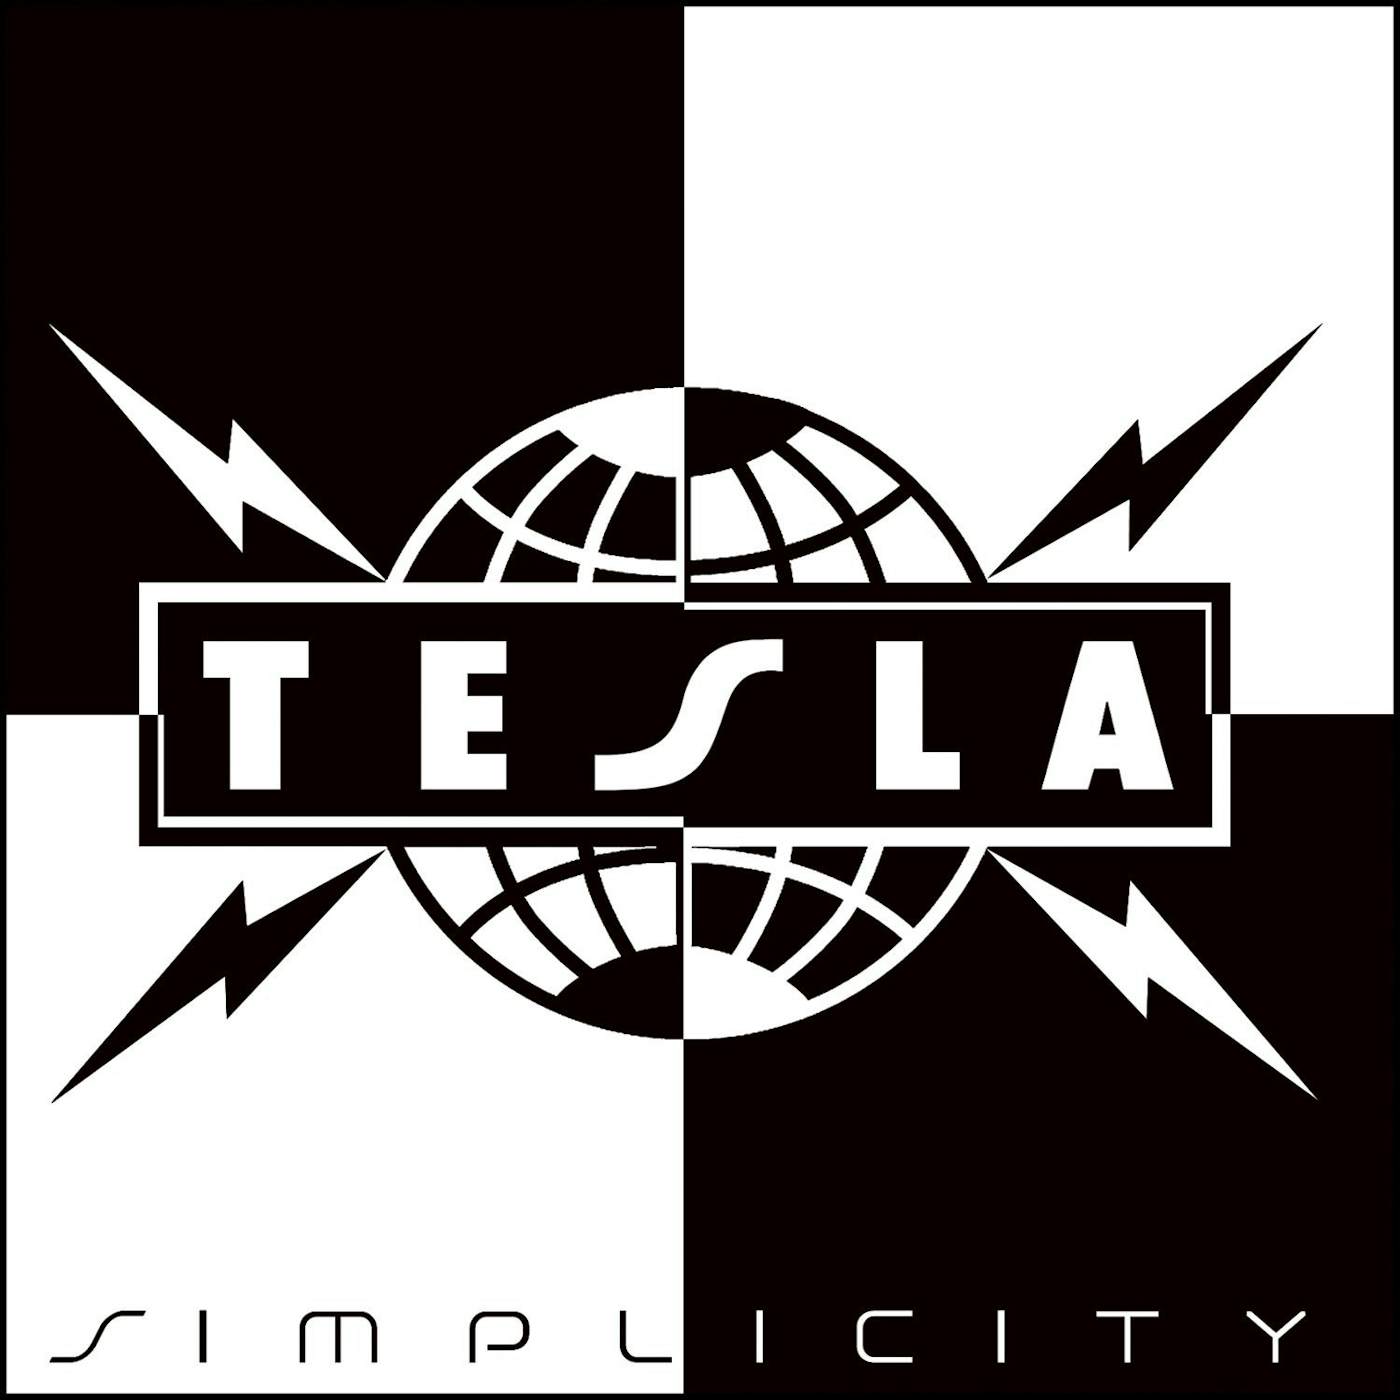 Tesla SIMPLICITY CD